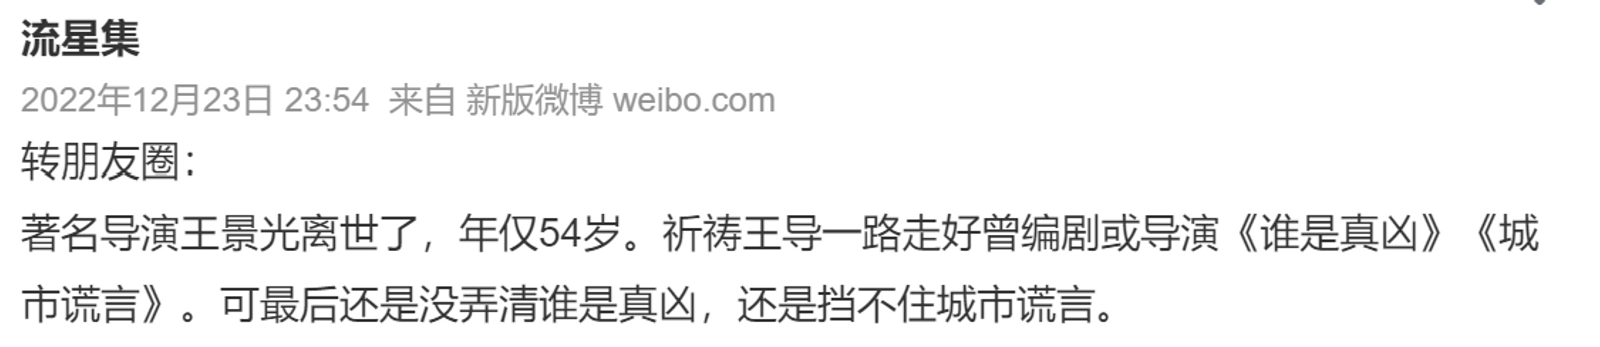 Weibo Post on Wang Jingguang death